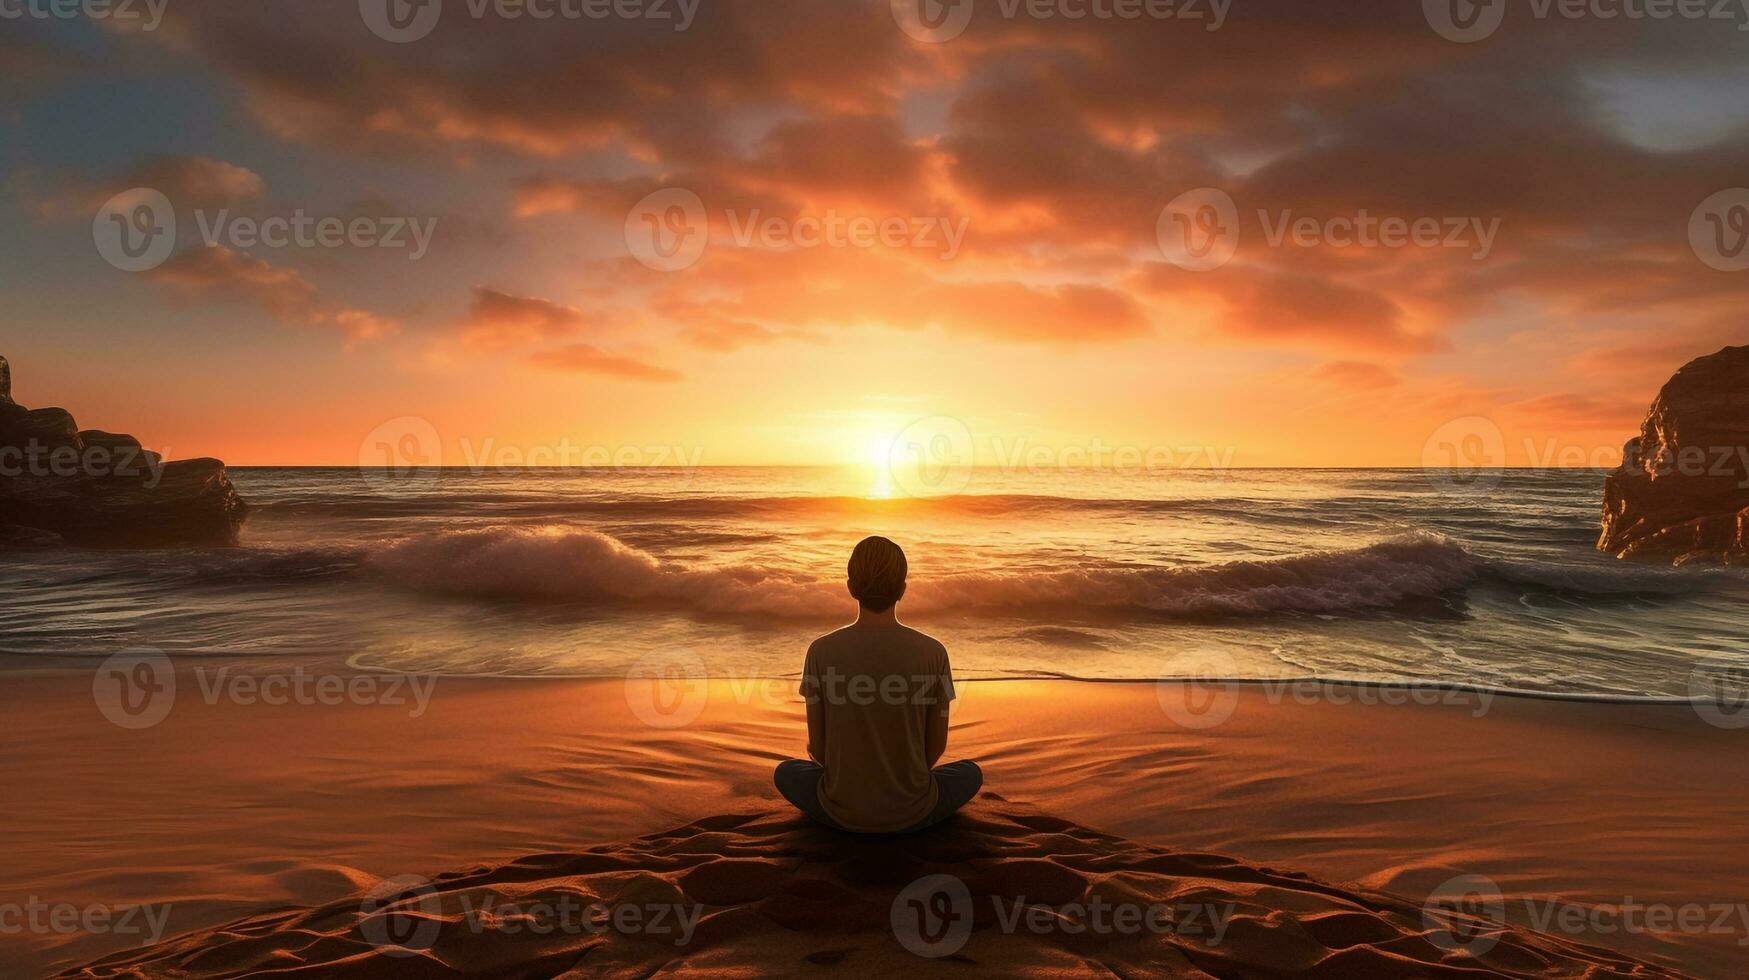 een persoon zittend Aan een strand aan het kijken de golven rollen in, mentaal Gezondheid afbeeldingen, fotorealistisch illustratie foto